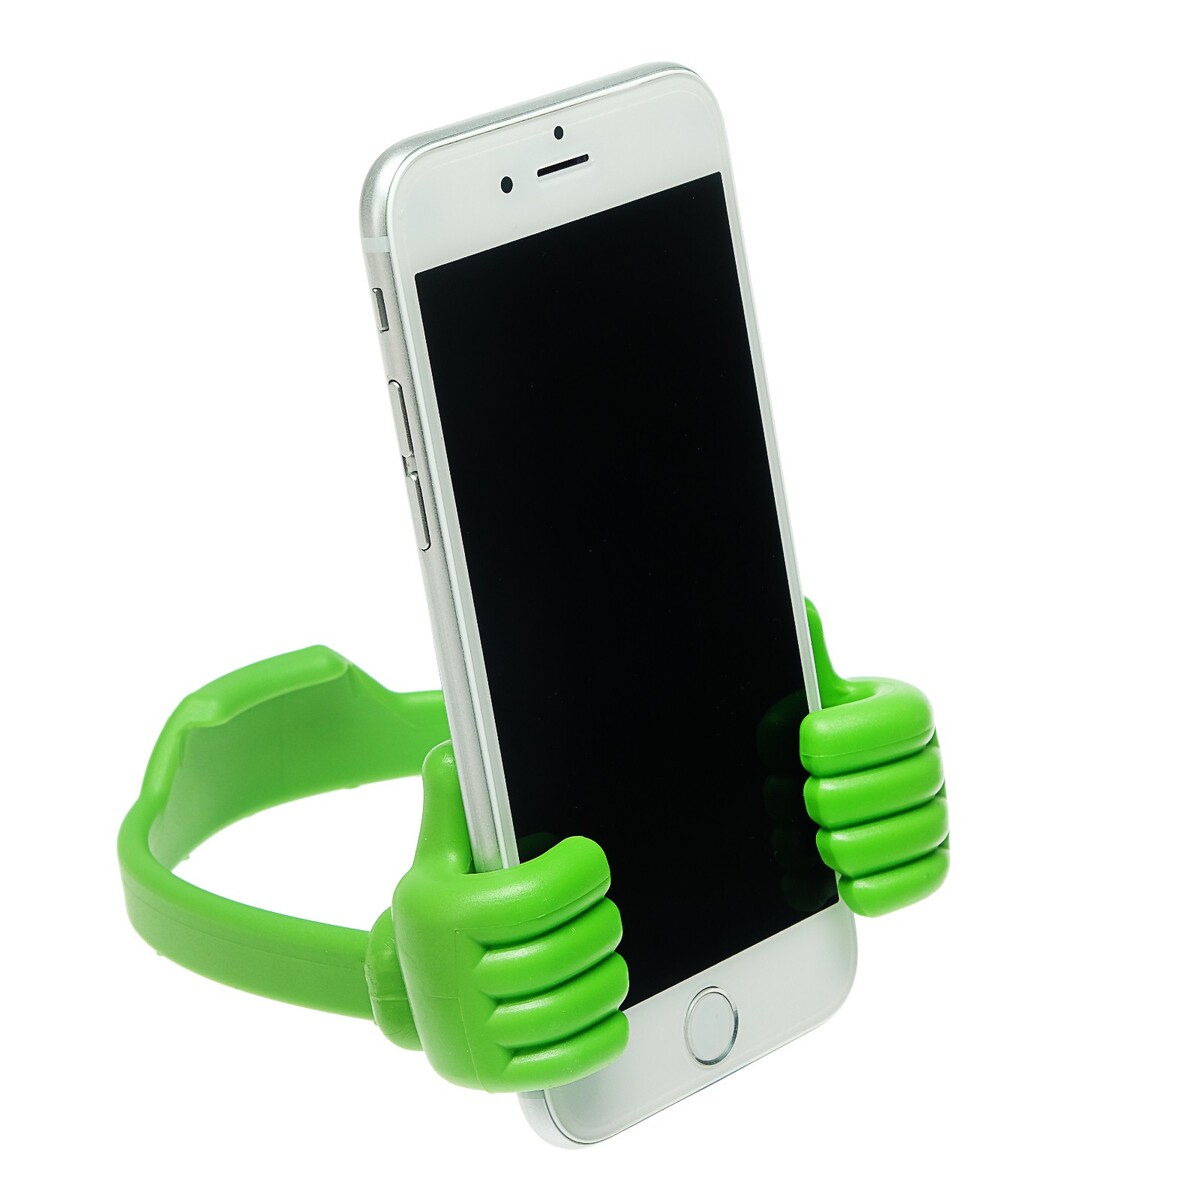 Подставка для телефона luazon, в форме рук, регулируемая ширина, зеленая подставка для телефона luazon в форме рук регулируемая ширина зеленая